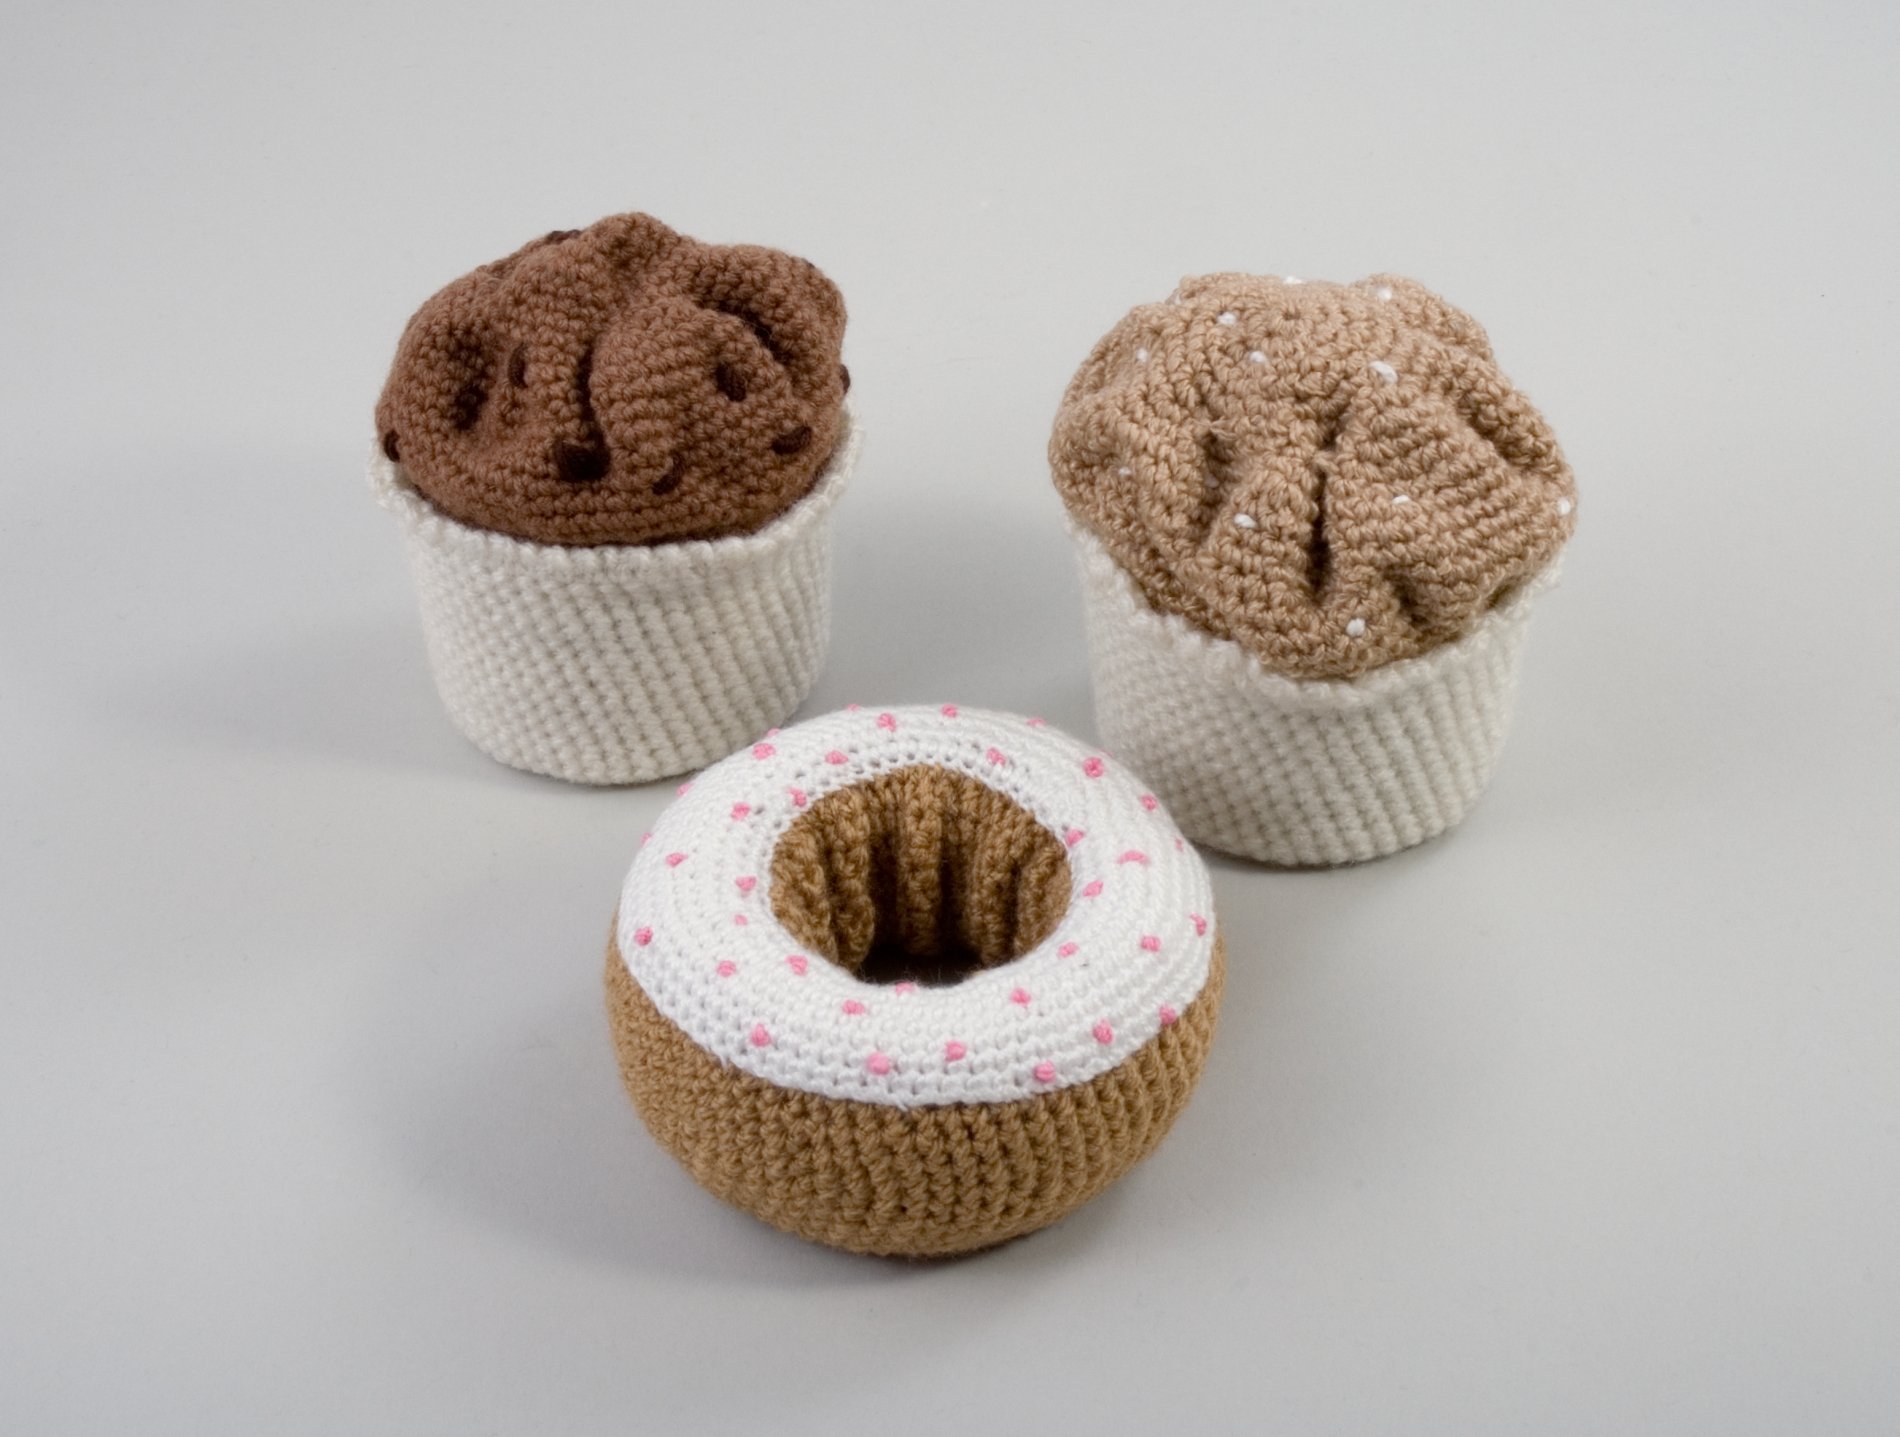 Kunstobjekt - Eat Art "Muffins & Donut" (Stiftung Domäne Dahlem - Landgut und Museum, Weiternutzung nur mit Genehmigung des Museums CC BY-NC-SA)